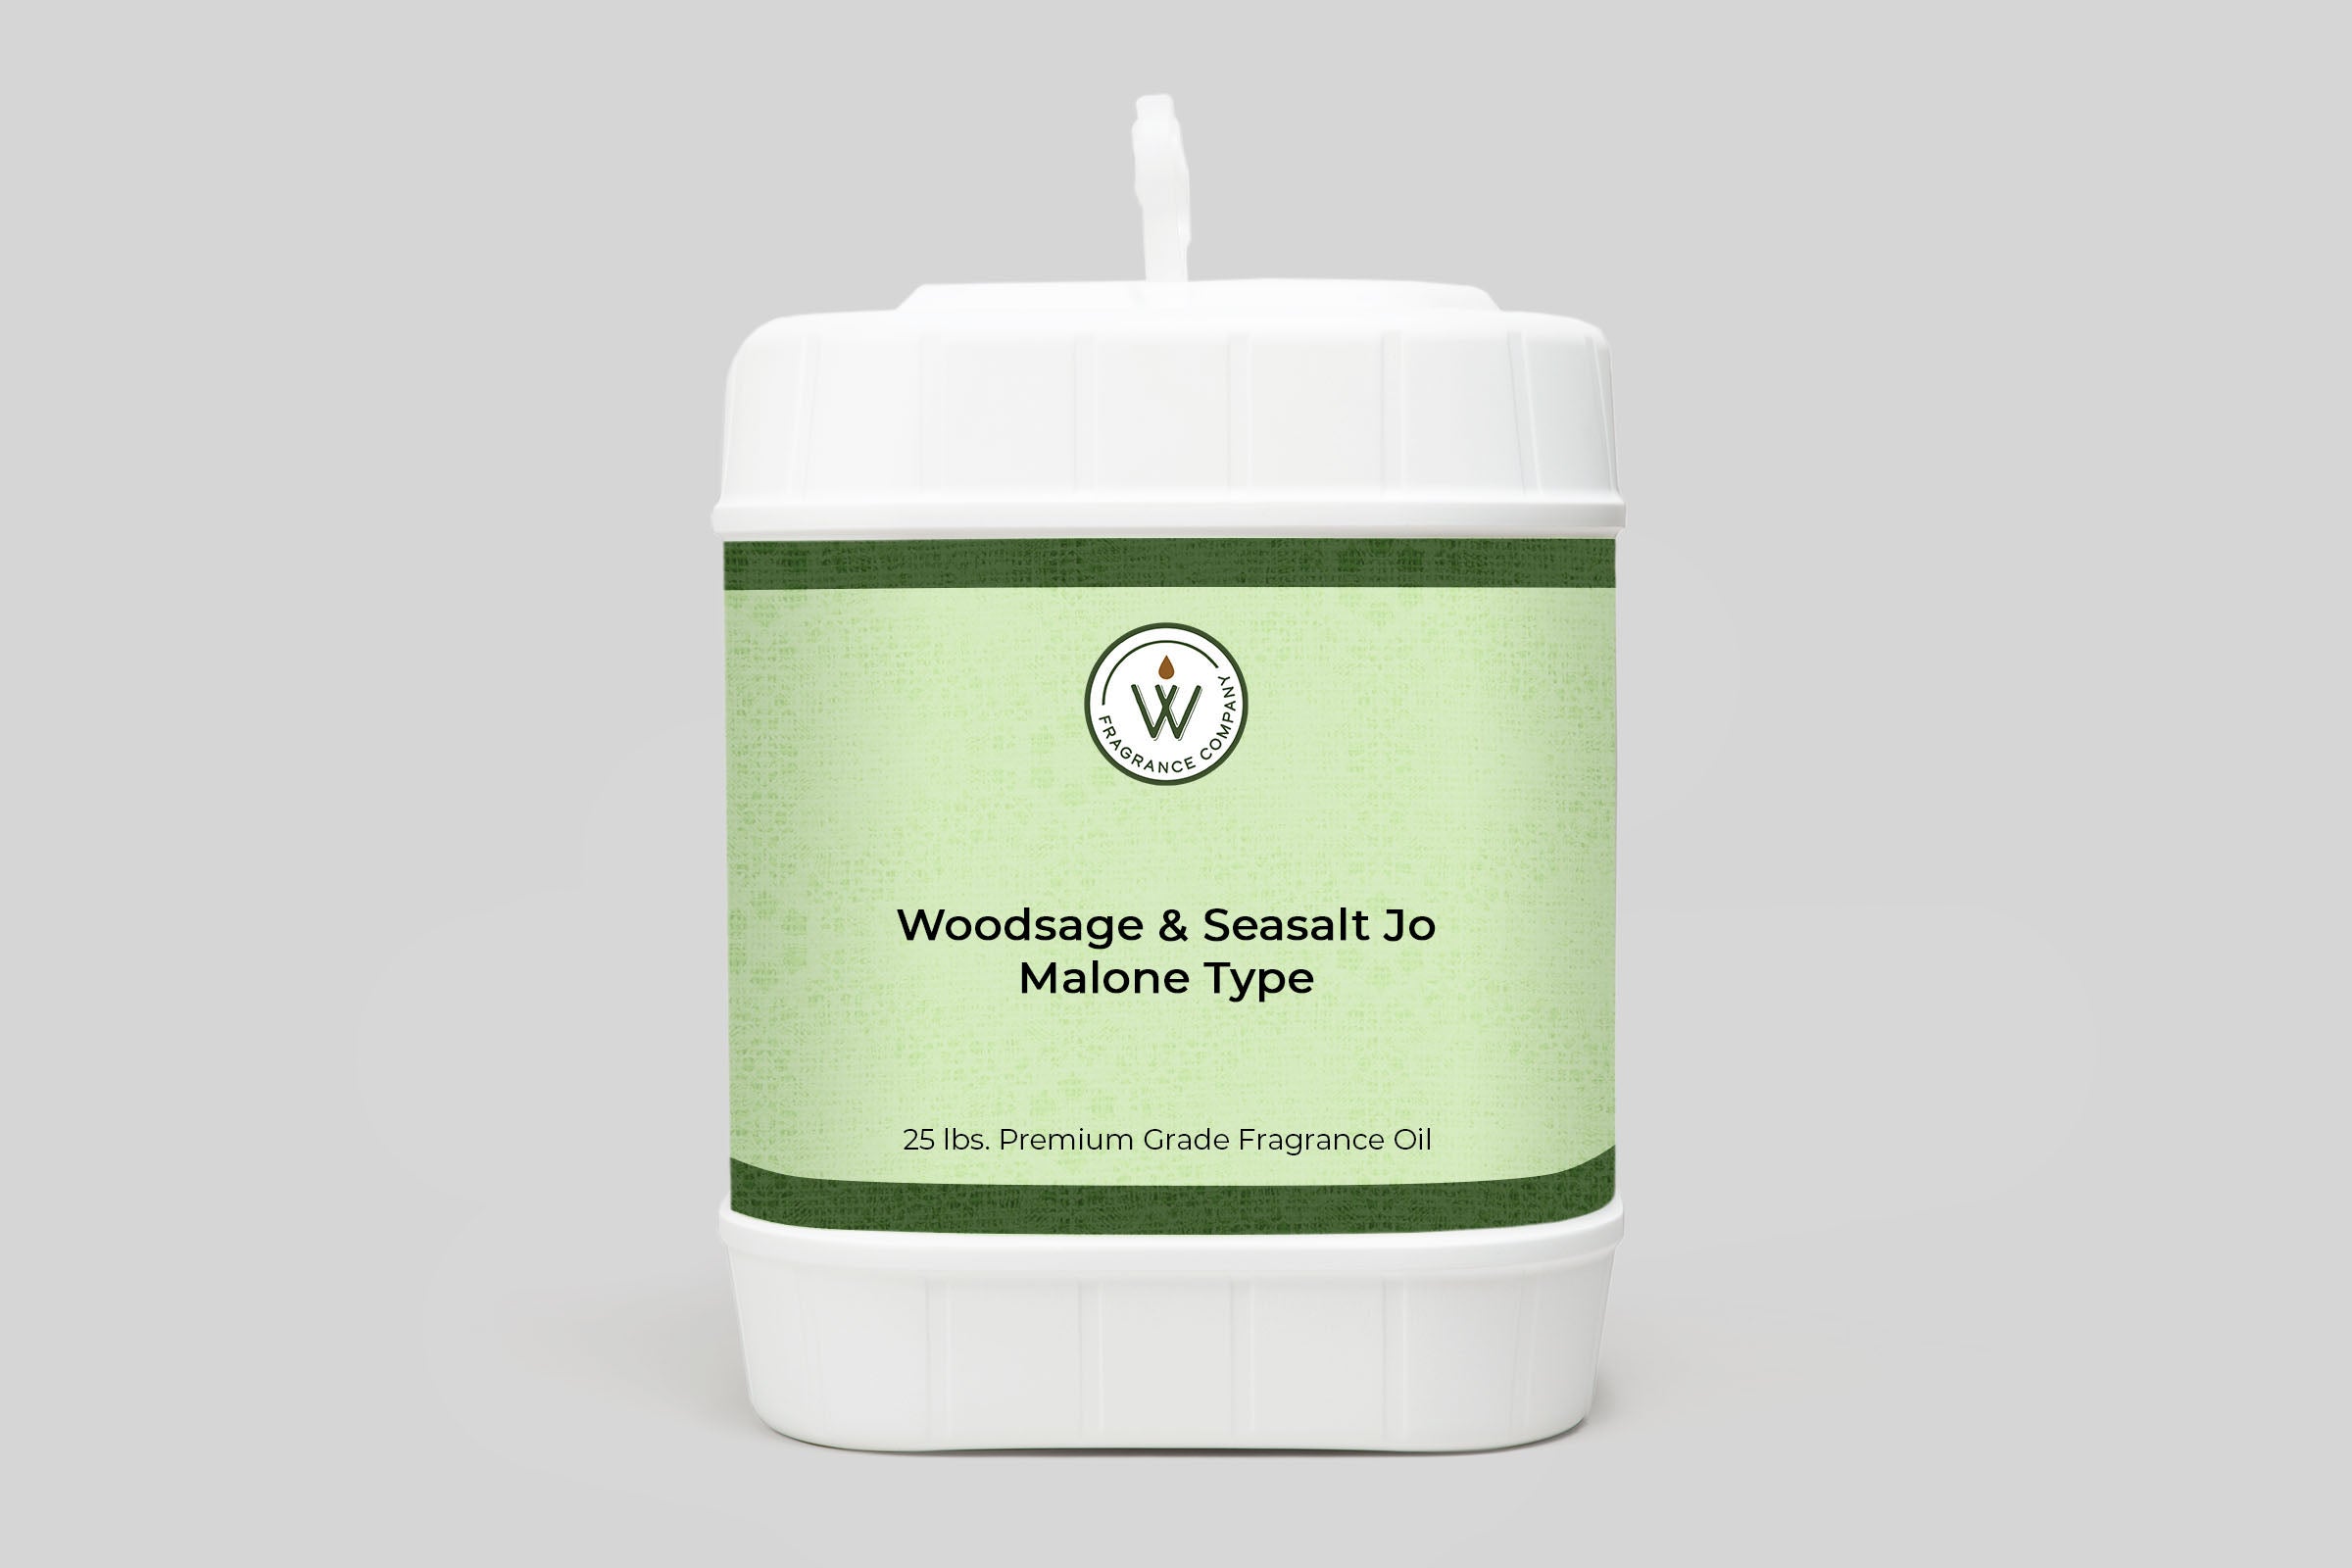 Woodsage & Seasalt Jo Malone Type Fragrance Oil